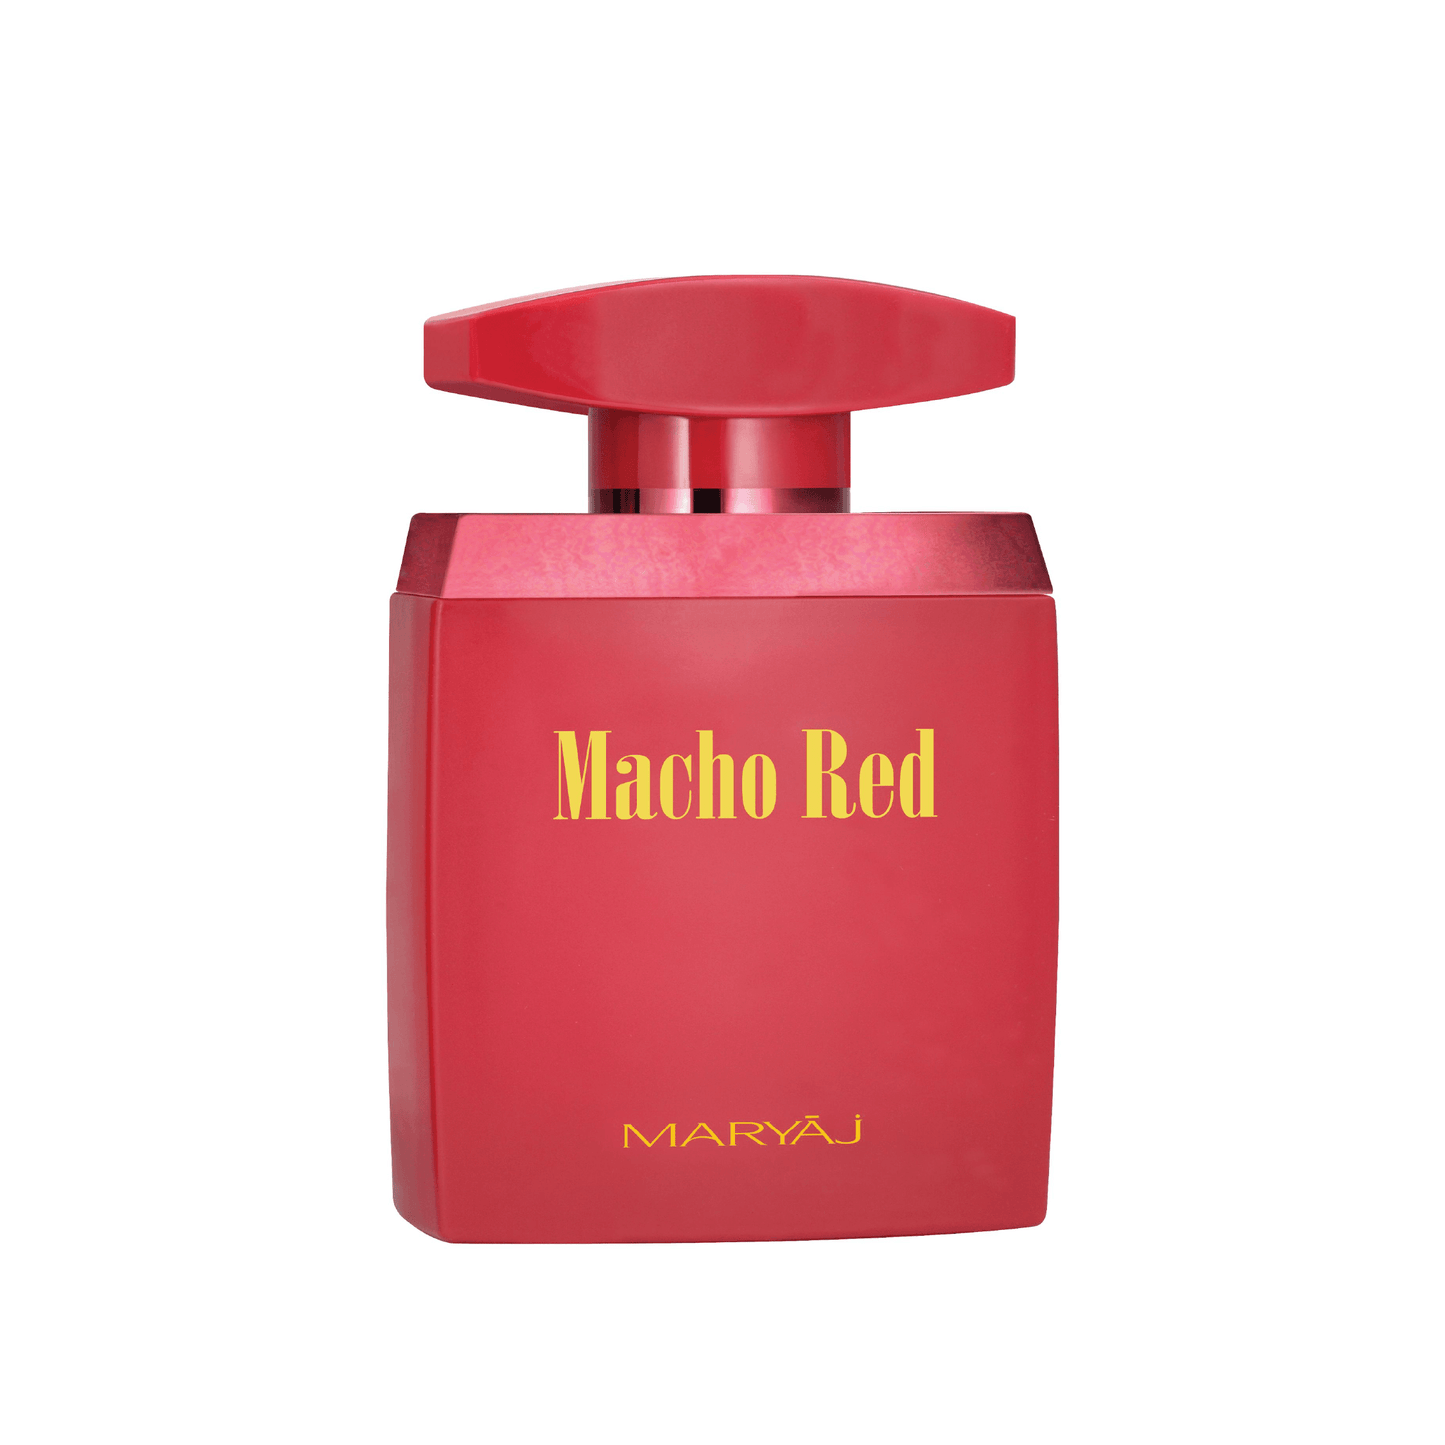 MACHO RED Eau De Parfum For Men, 100 ml